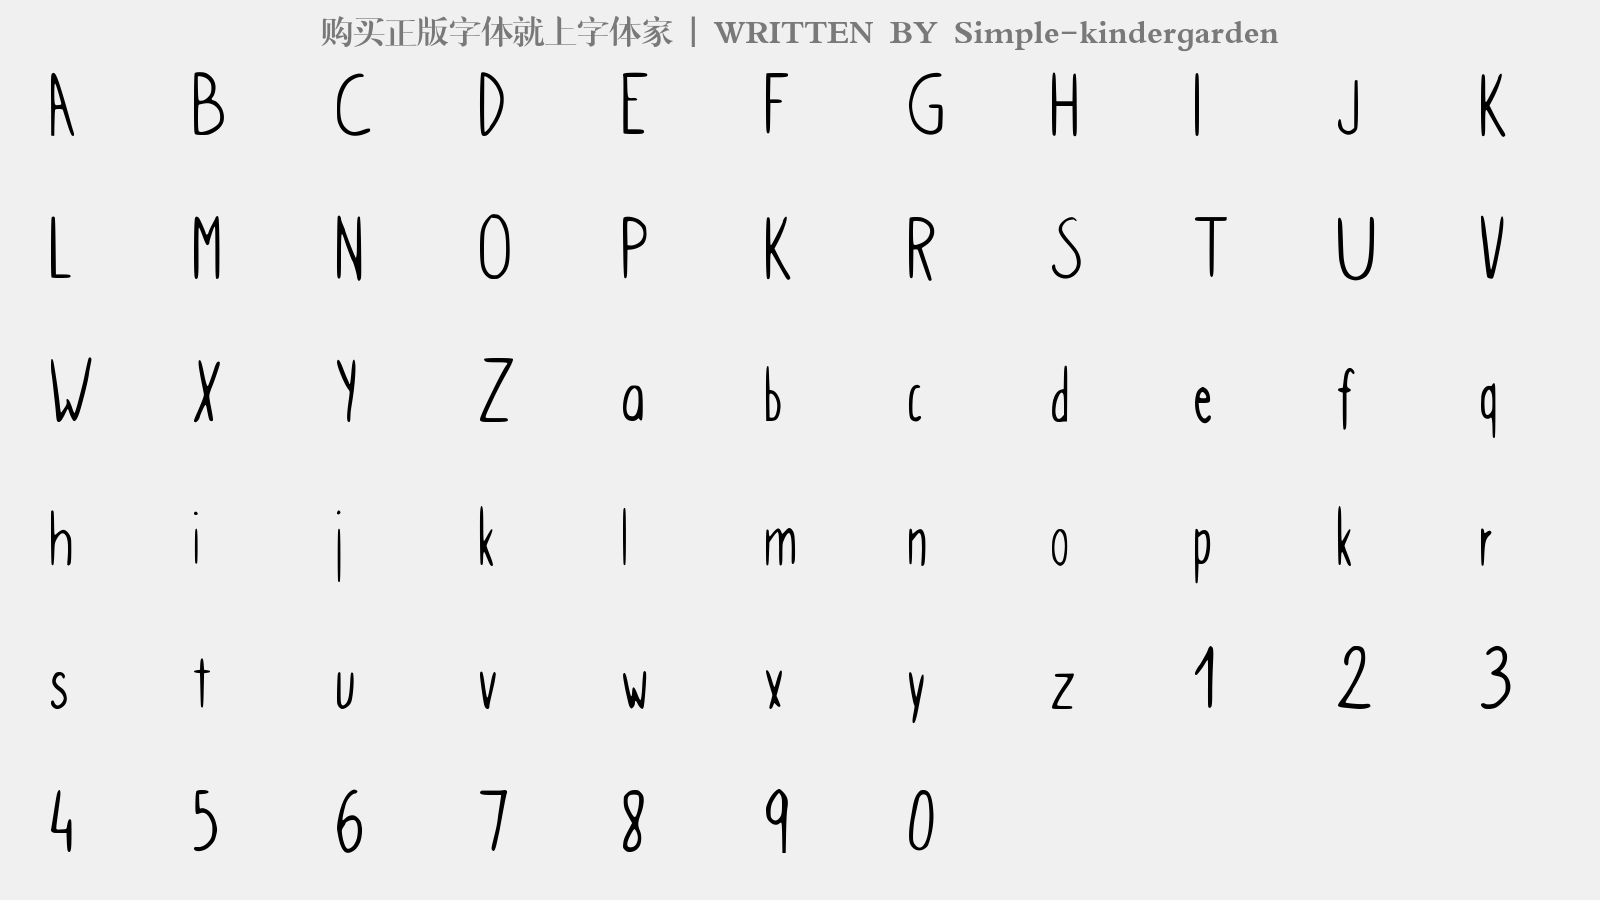 Simple-kindergarden - 大写字母/小写字母/数字